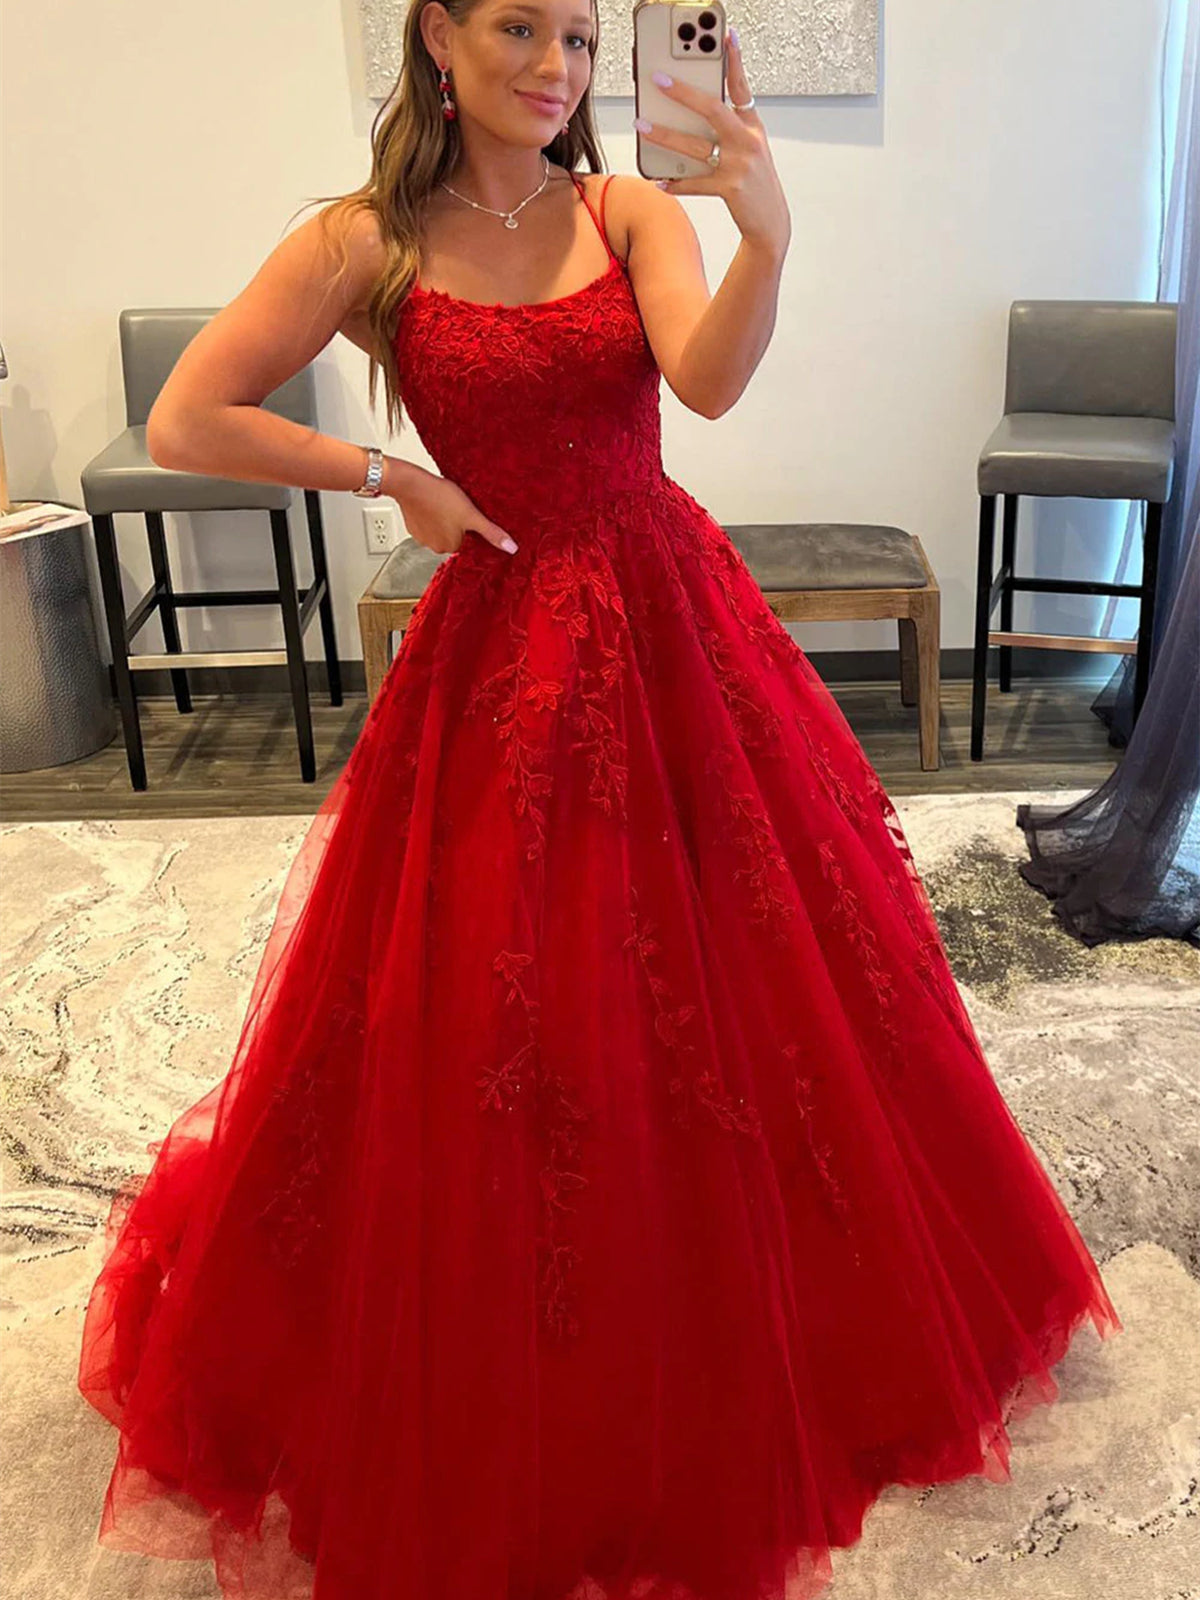 Top 5 Red Formal Dresses – When Freddie met Lilly